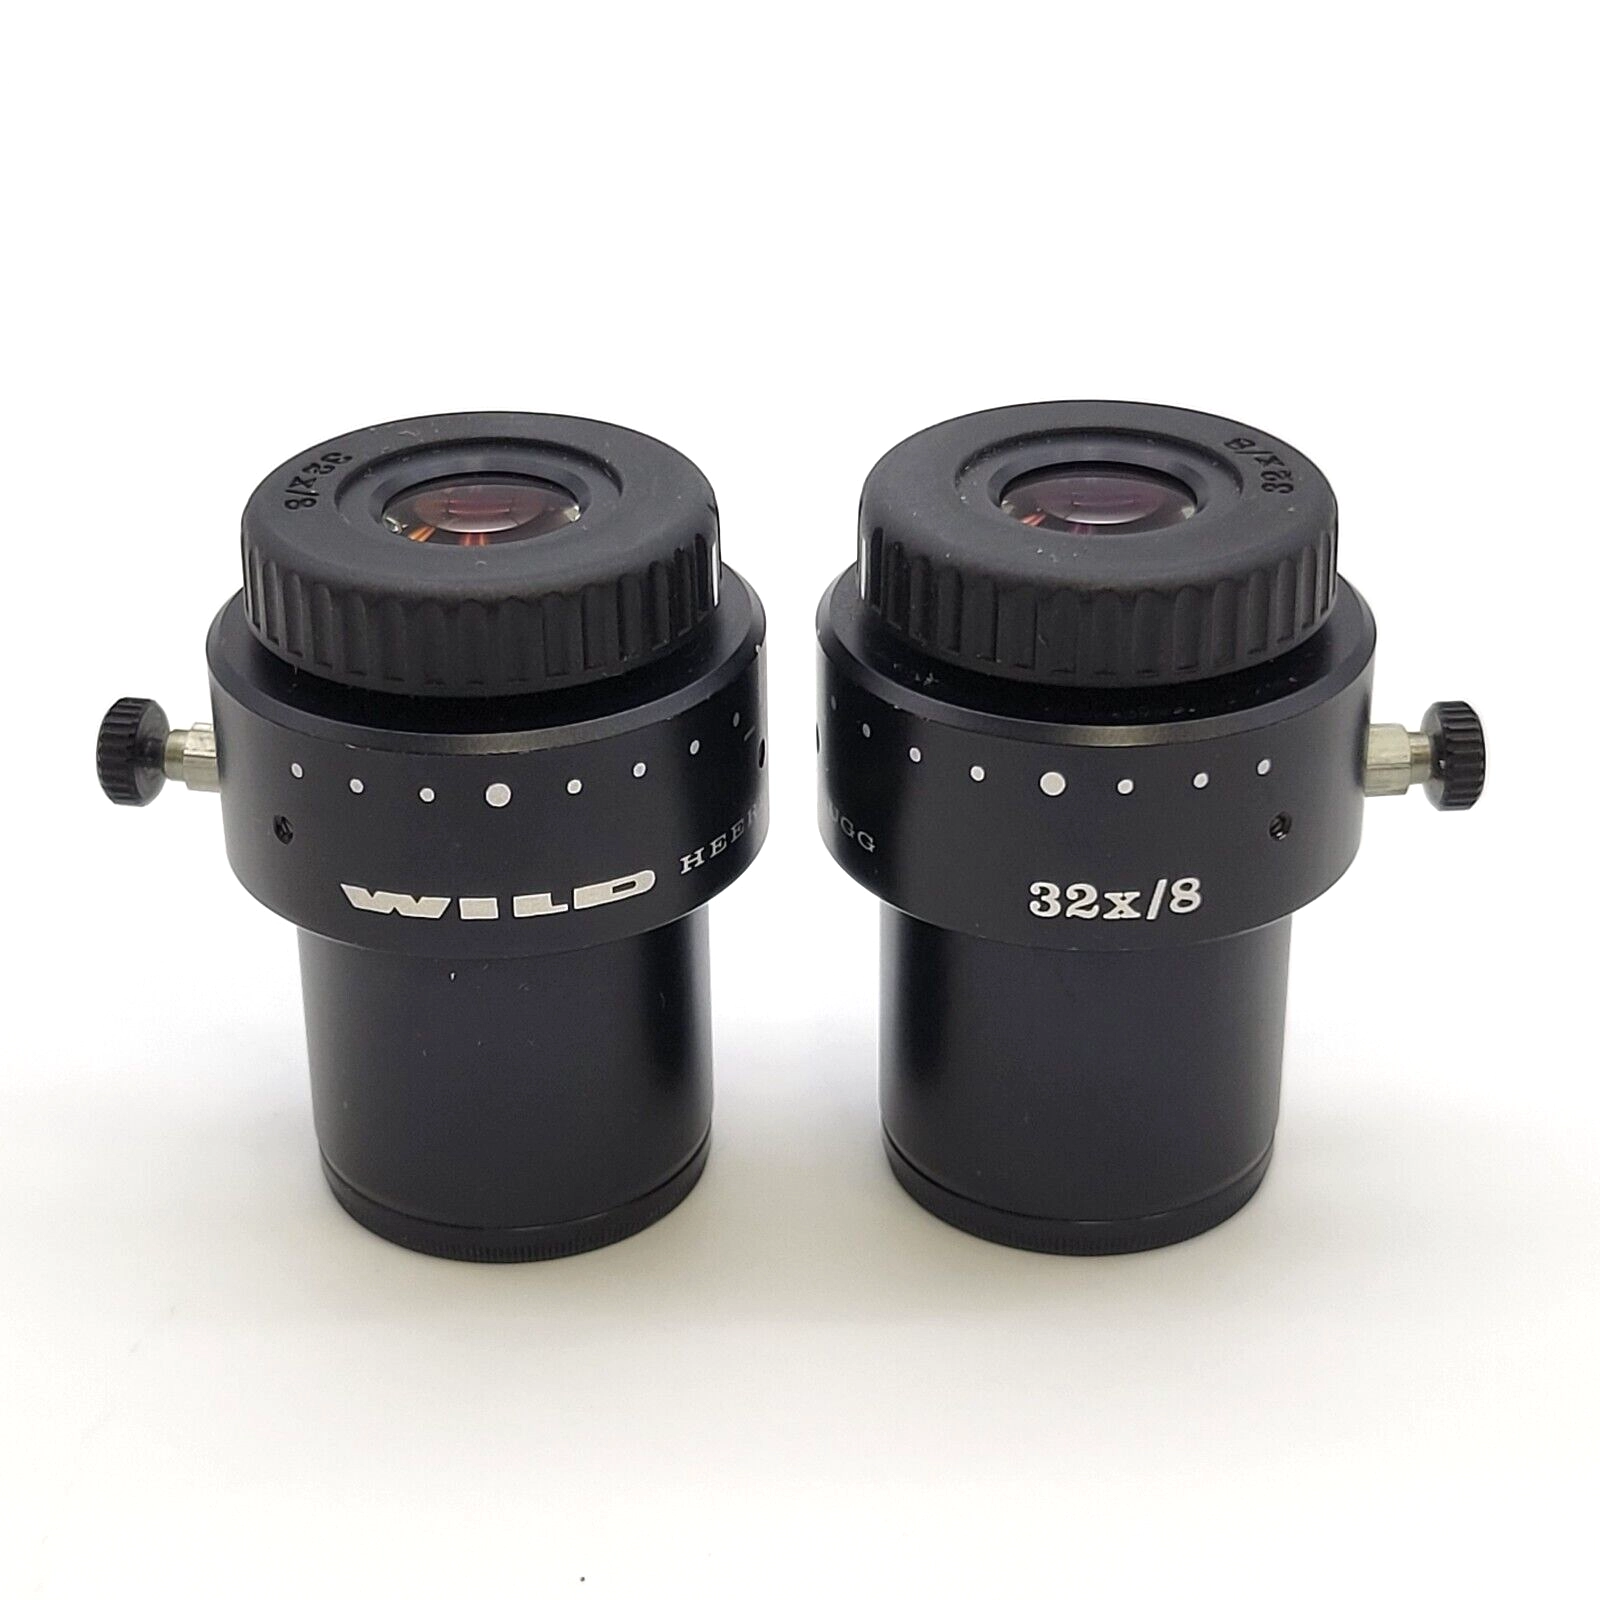 Wild Leica Stereo Microscope Eyepiece Pair 32x/8 Eyepieces